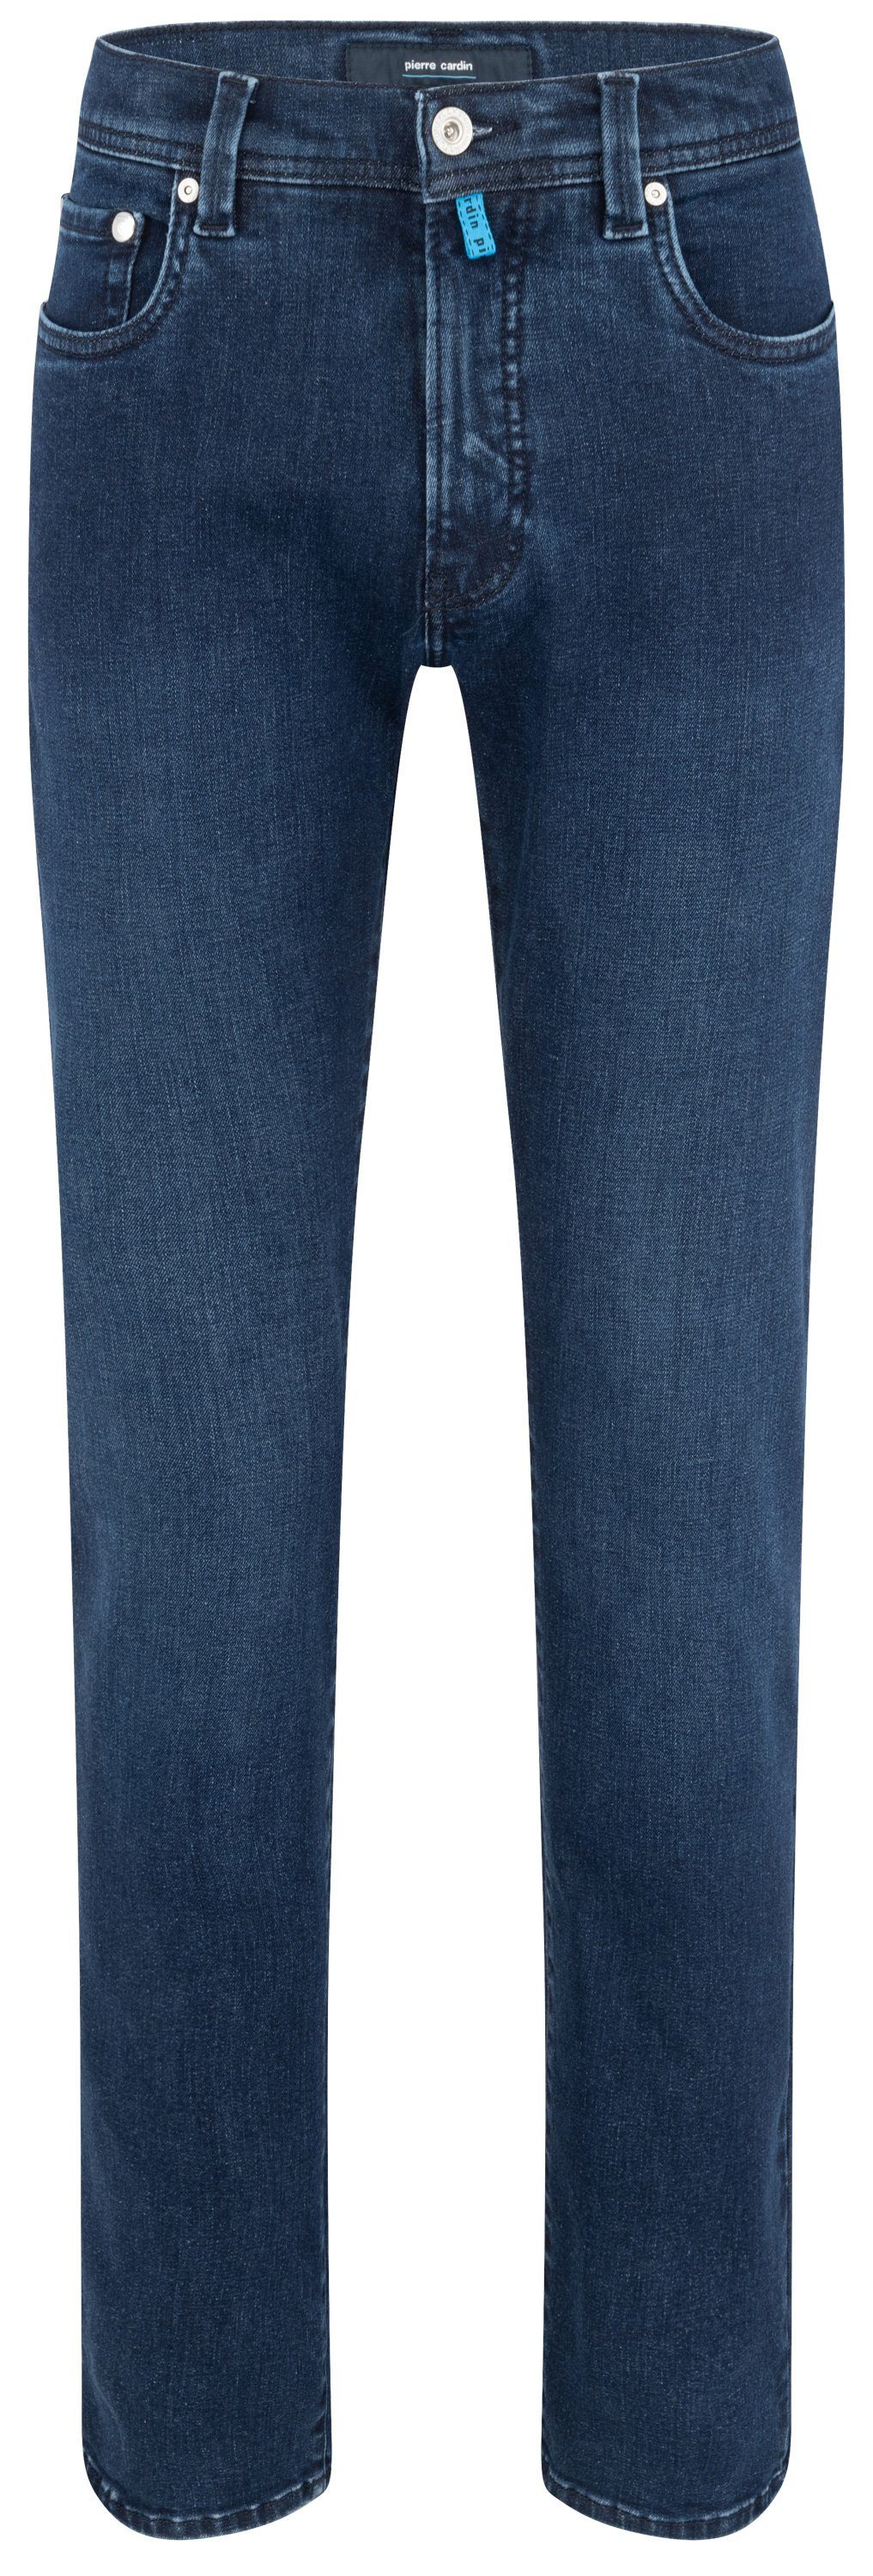 Pierre Cardin 5-Pocket-Jeans PIERRE CARDIN LYON TAPERED dark blue raw 34510 8048.6810